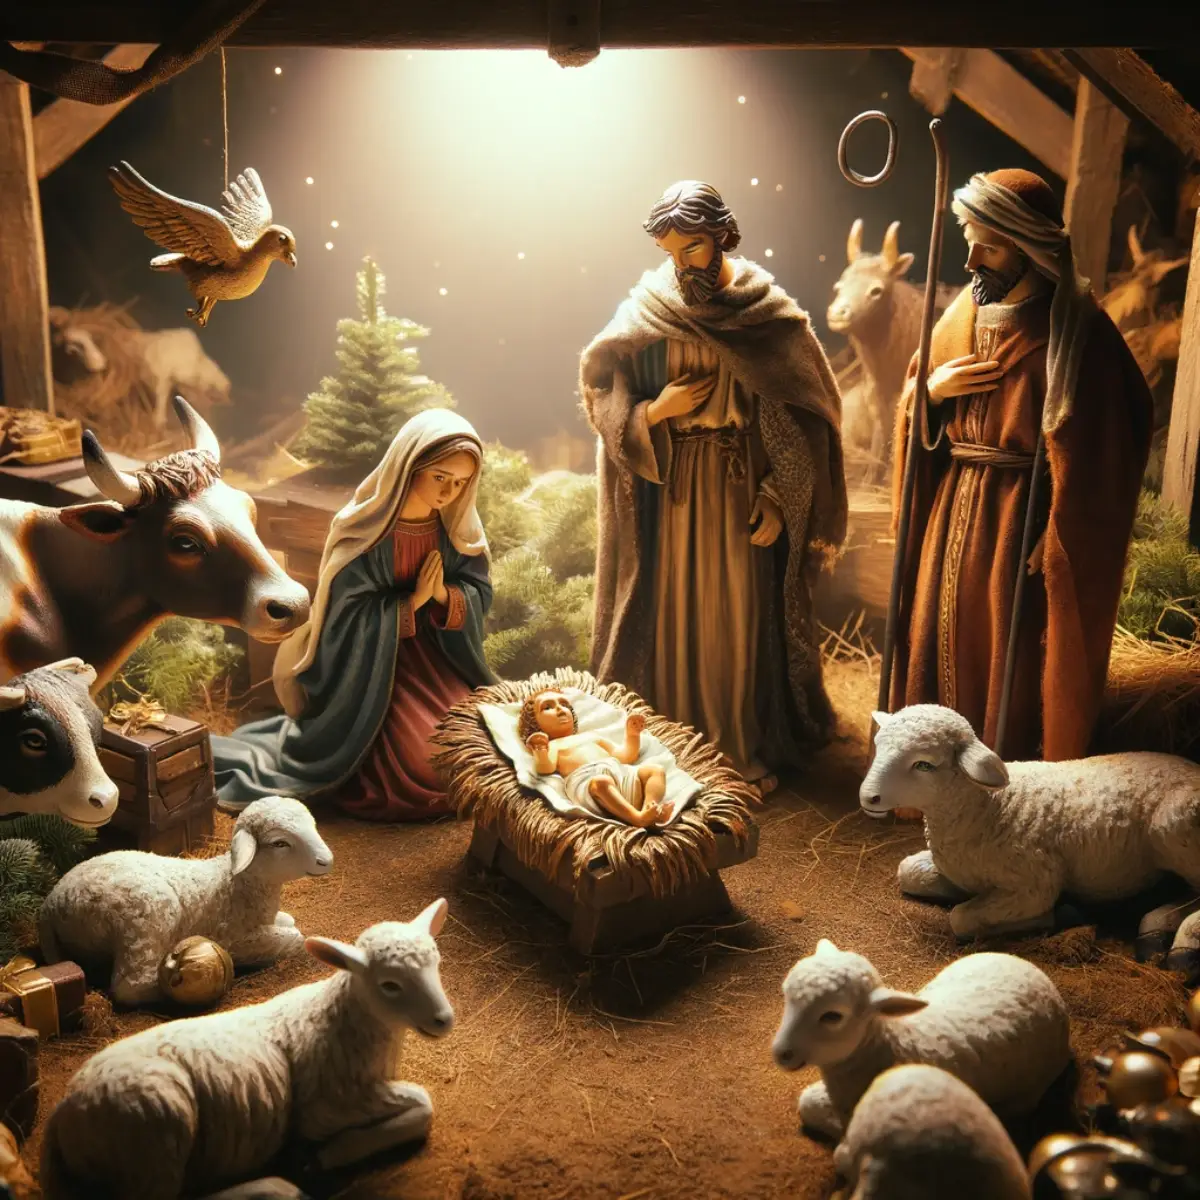 El nacimiento de Jesús: una mirada histórica y reveladora